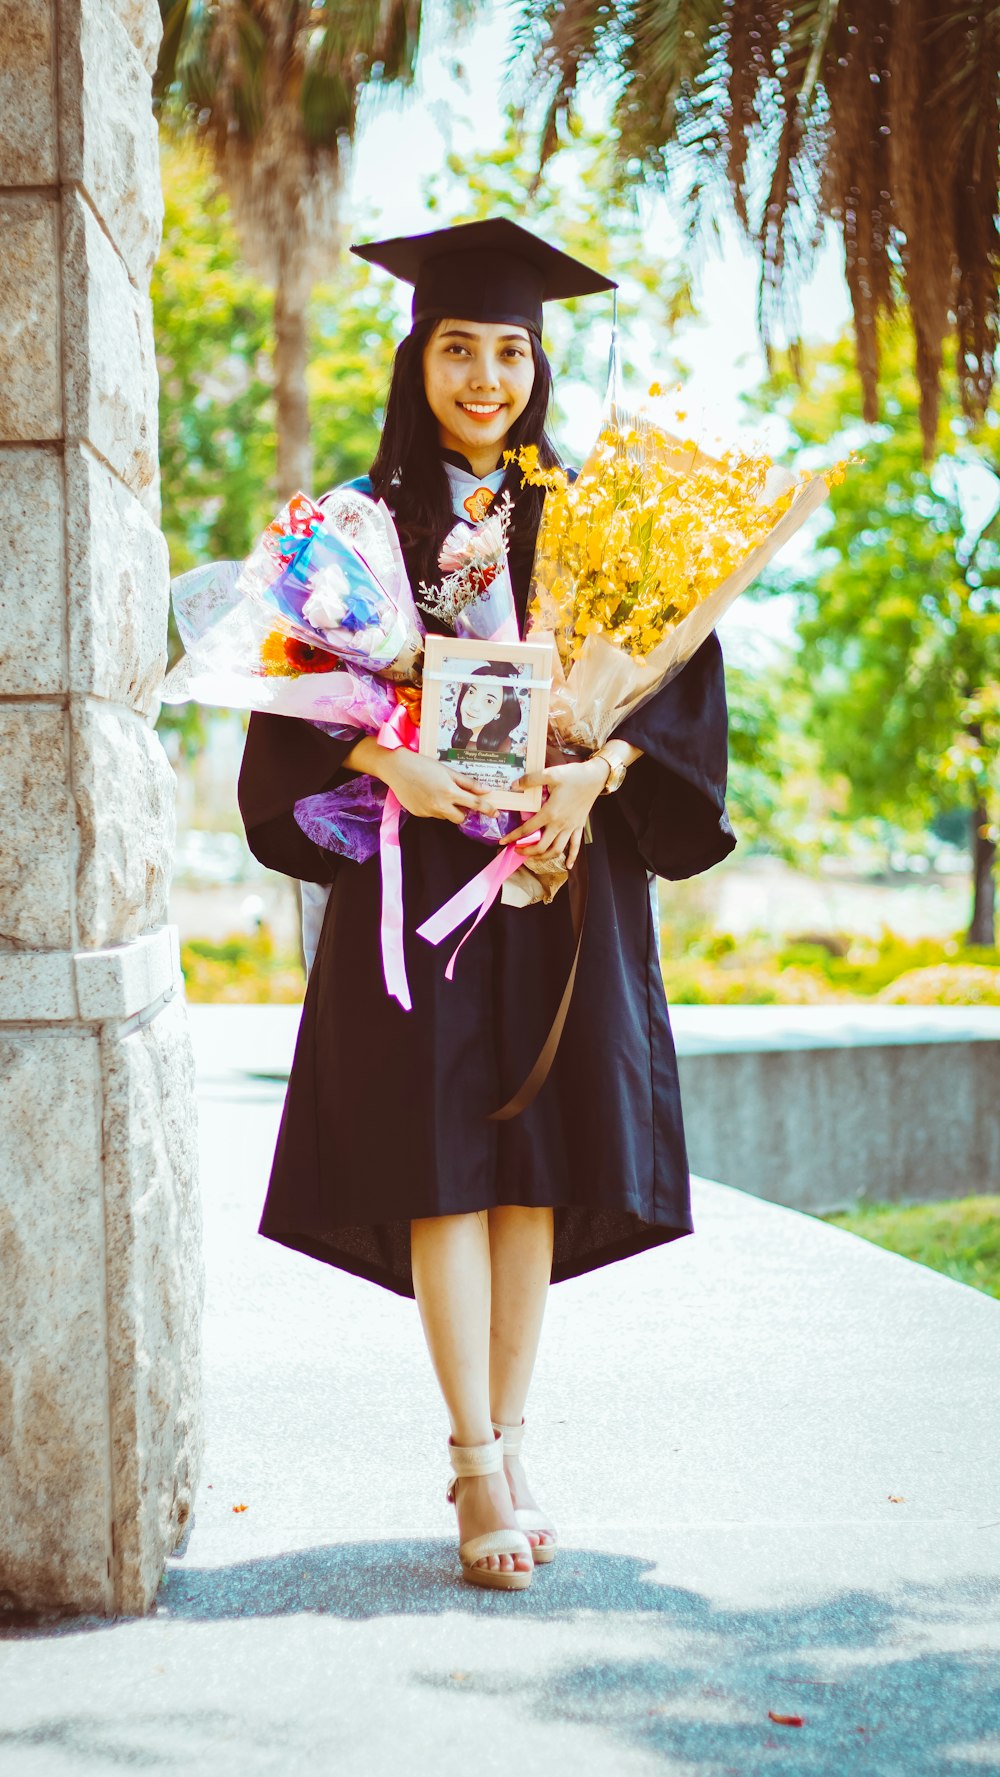 Femme en robe académique noire et violette tenant un bouquet de fleurs